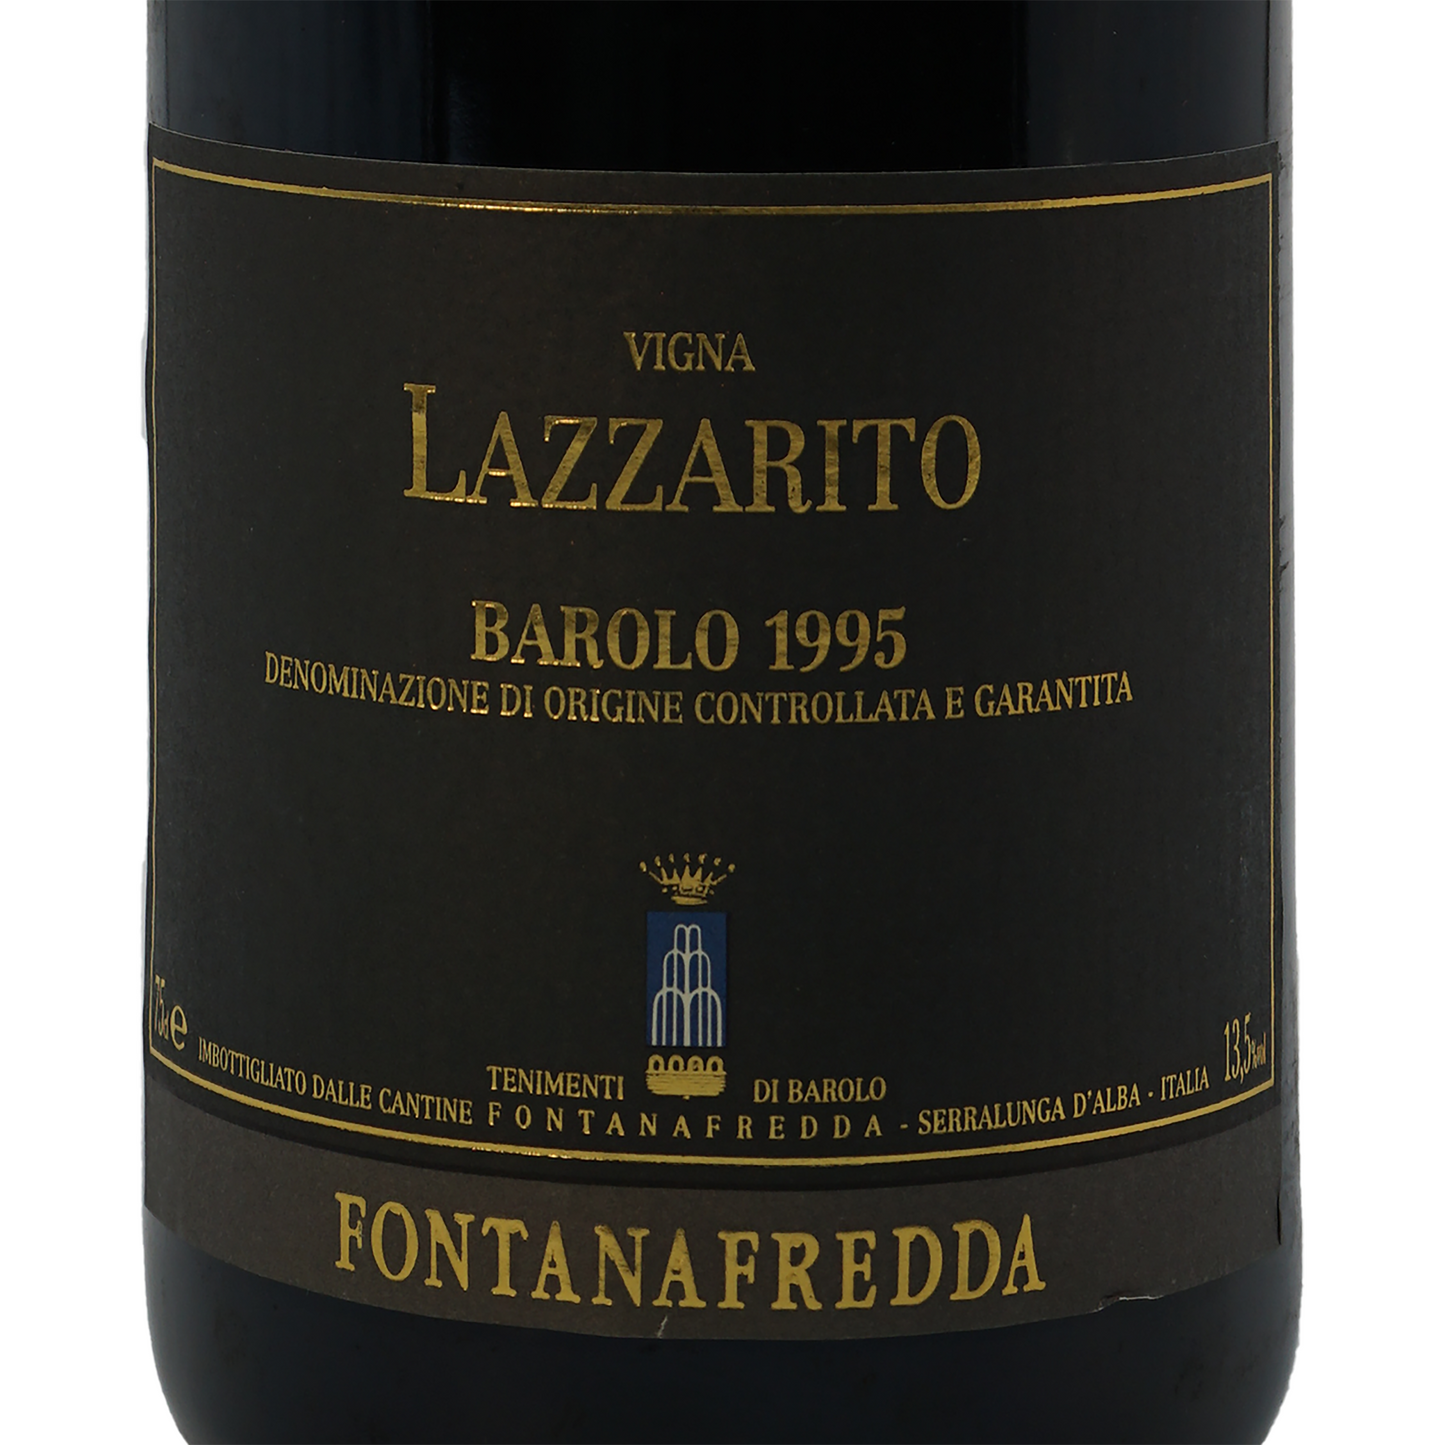 バローロ・ヴィーニャ・ラッツァリート、フォンタナフレッダ「1995」 Barolo Vigna Lazzarito、Fontanafredda